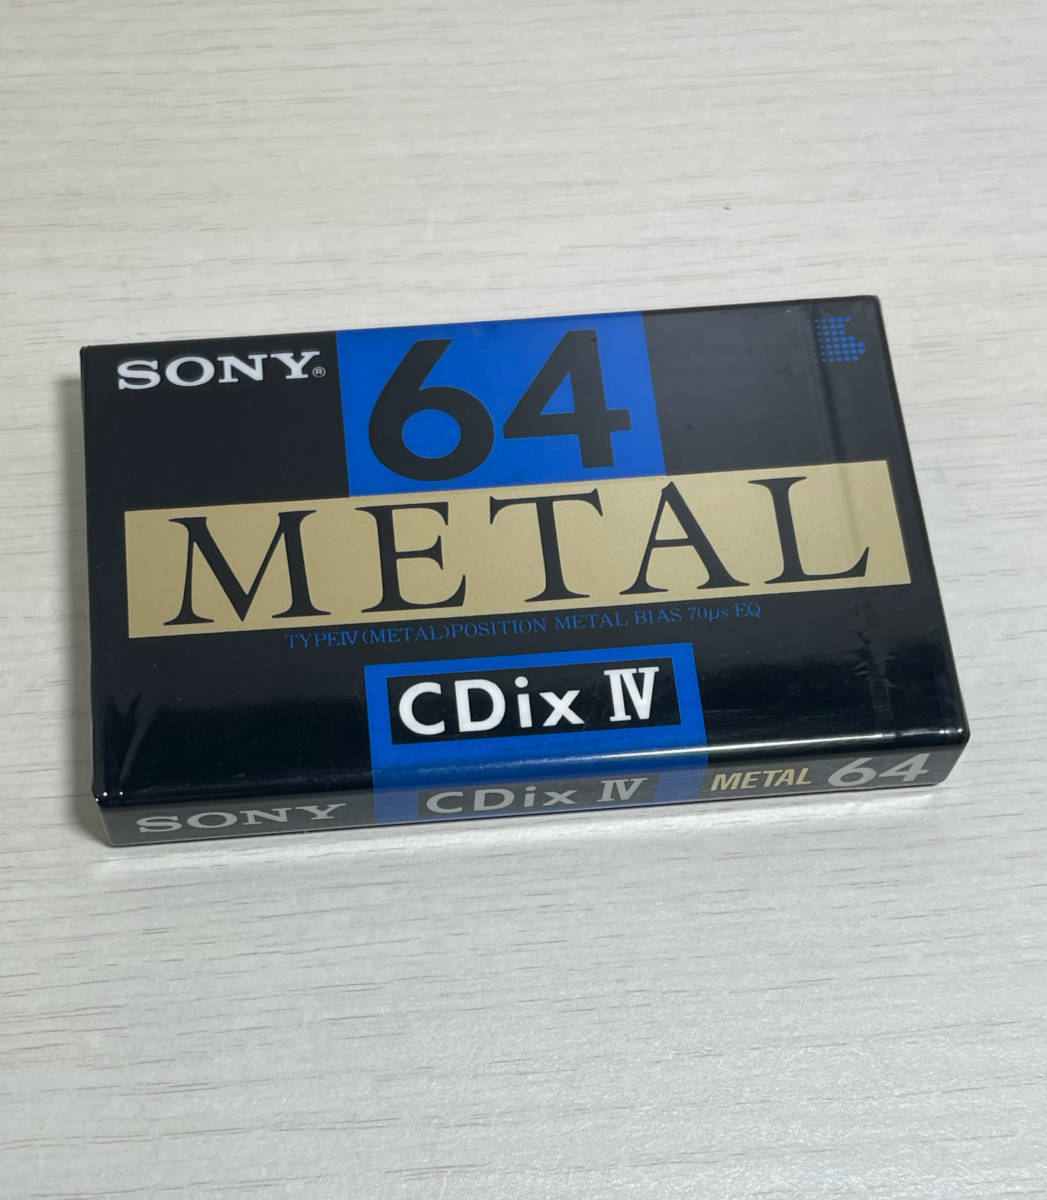 【即決 送料無料 匿名配送】SONY METAL CDix Ⅳ 64 ソニー カセットテープ メタル 【未開封】新品